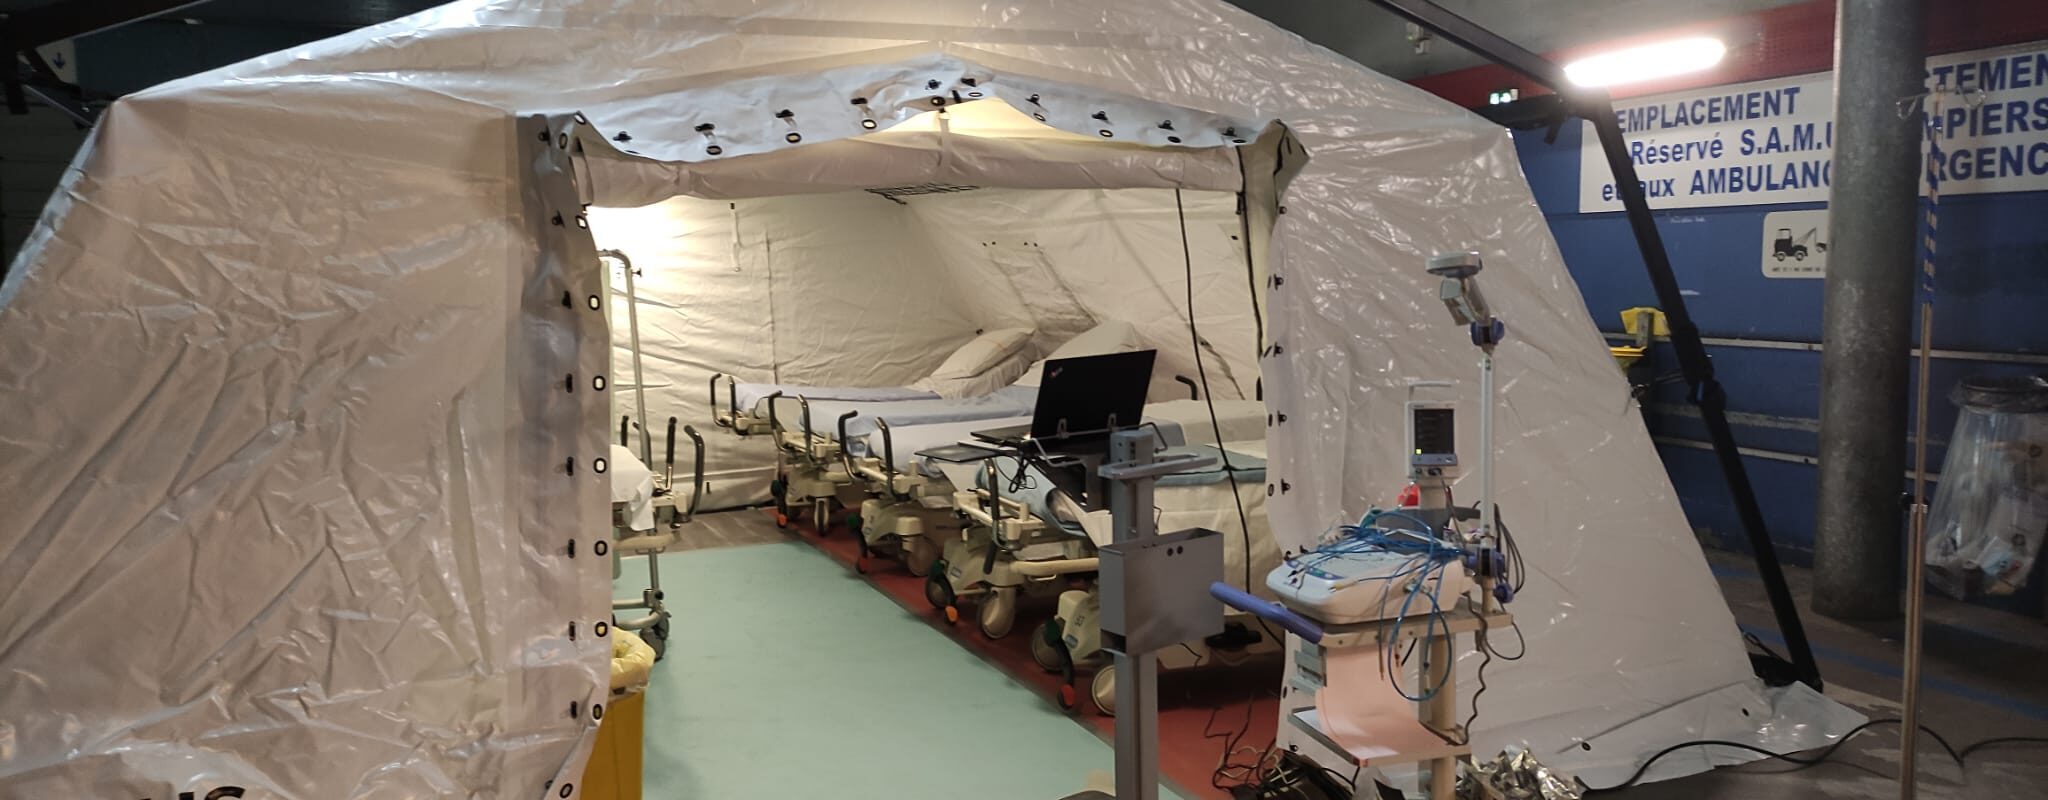 Au CHU de Bordeaux, les urgences en crise accueillent les patients sous la tente